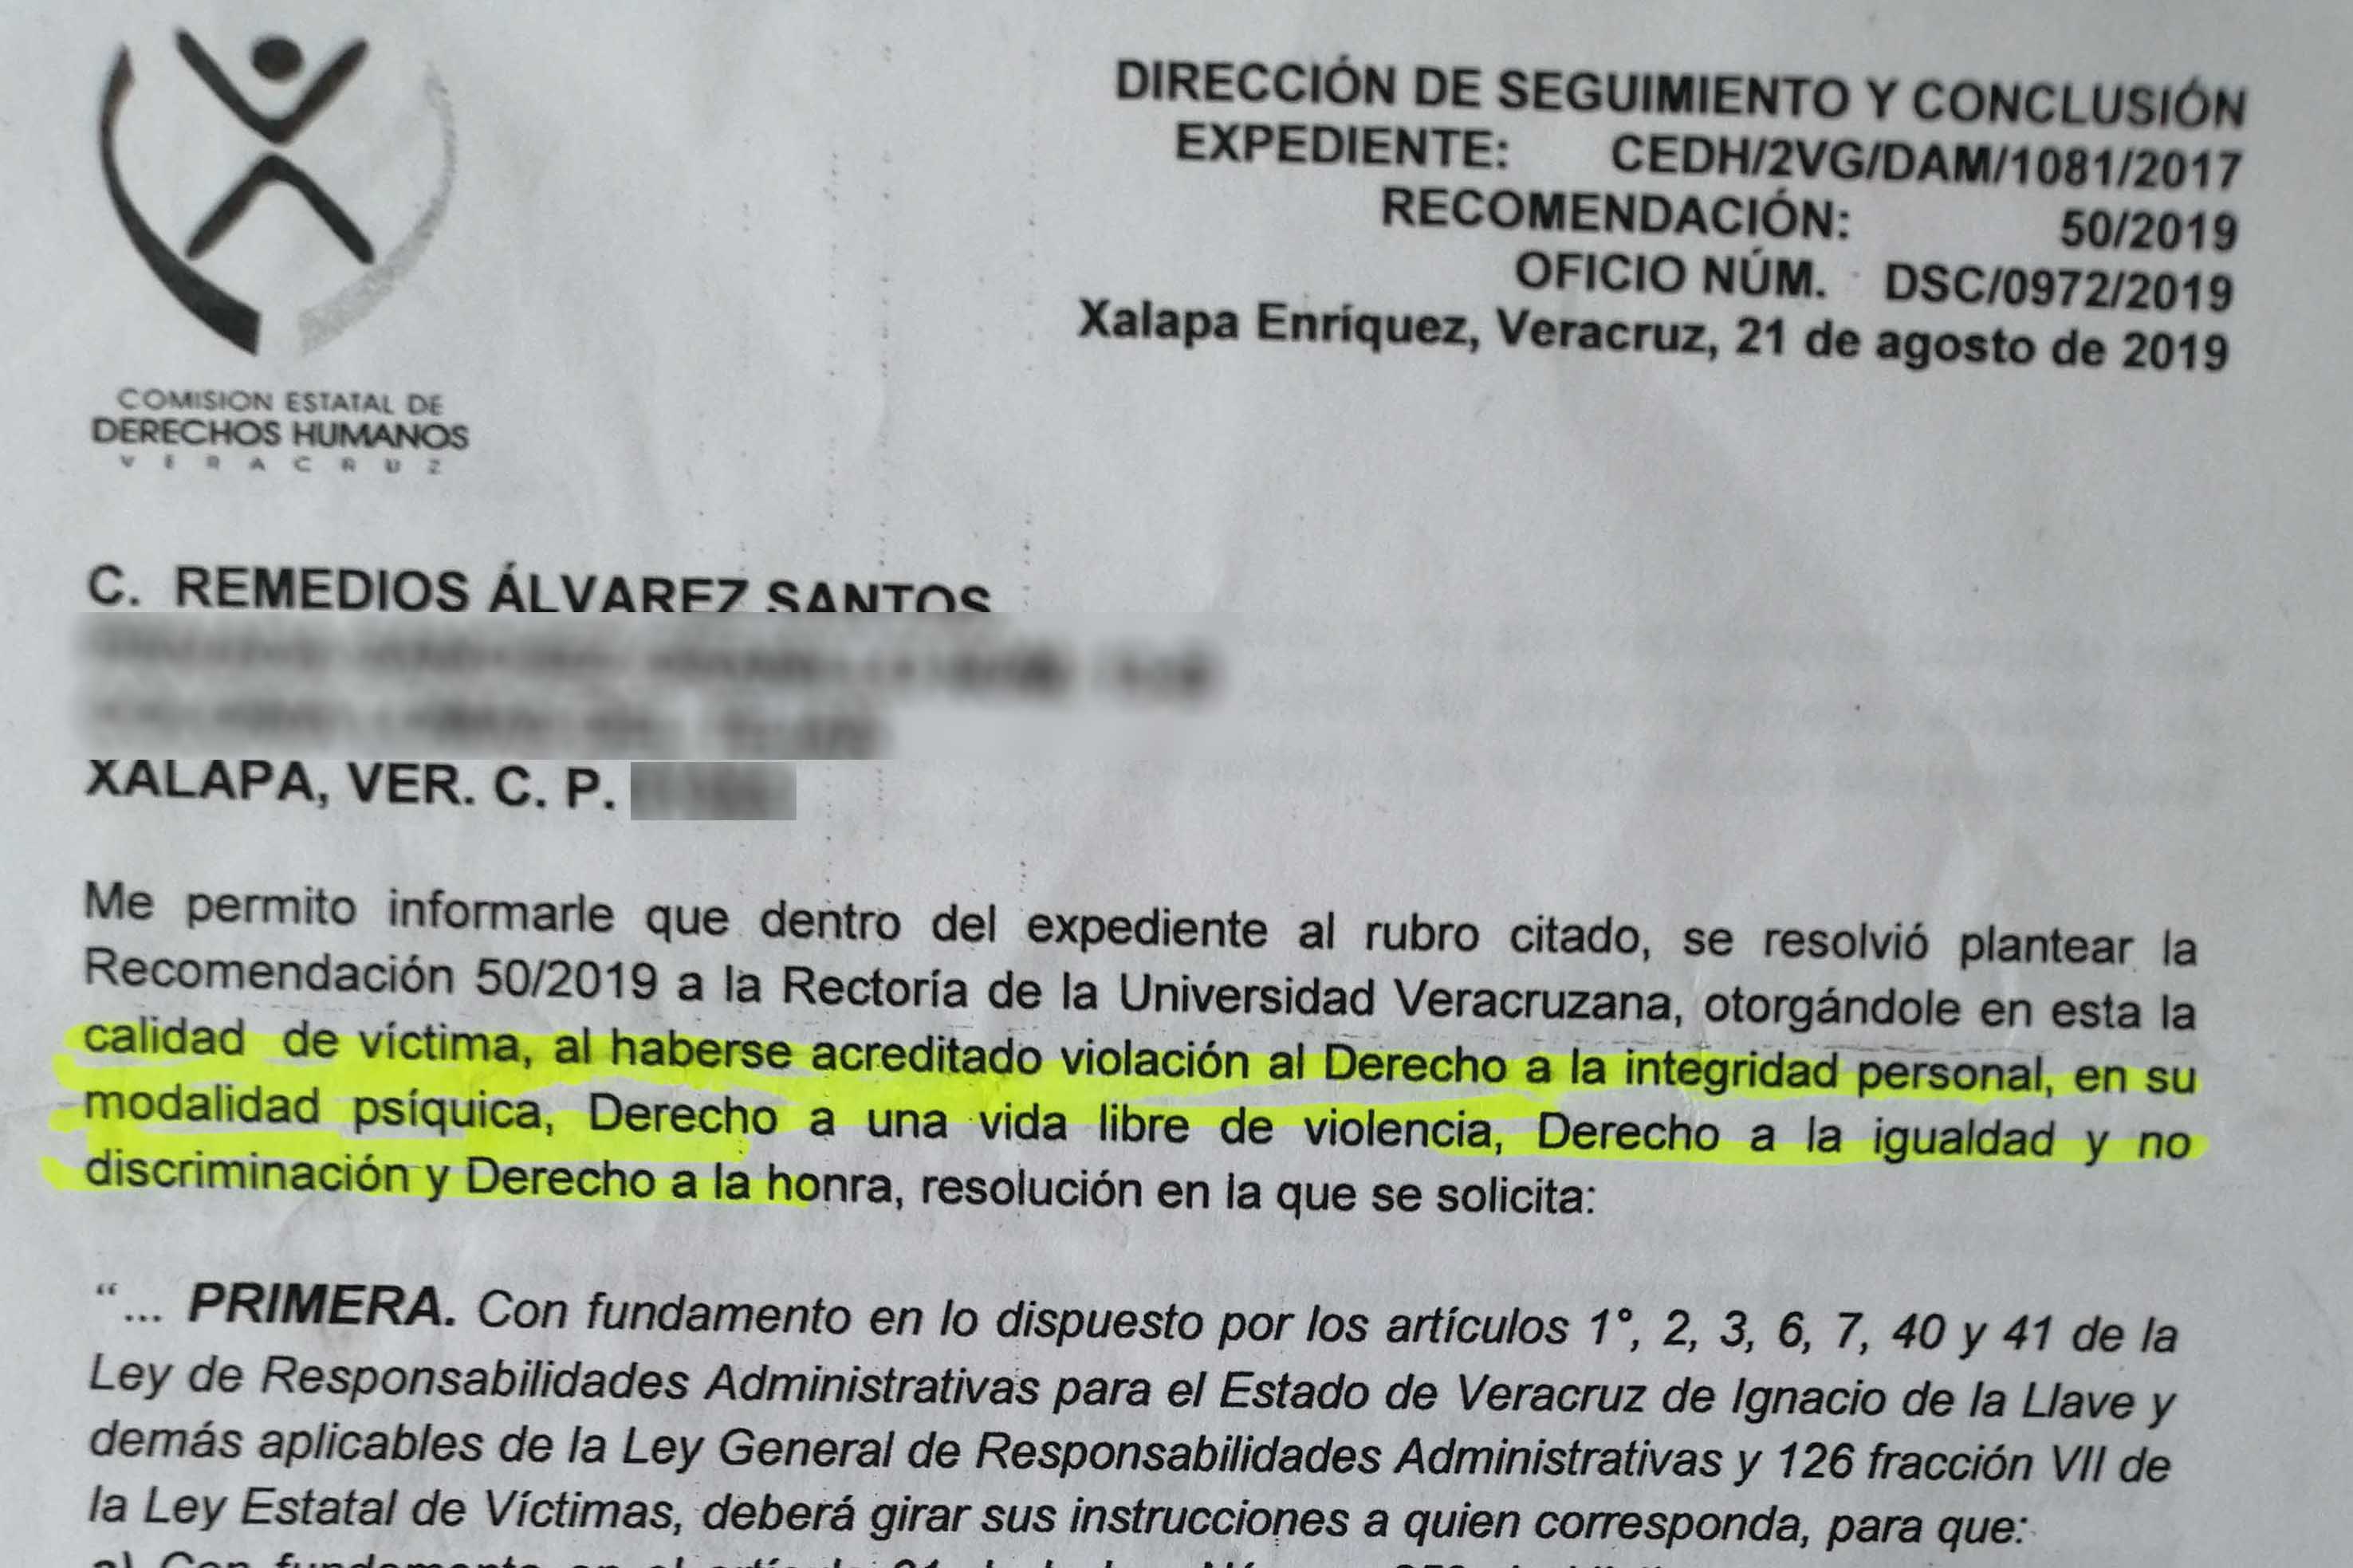 Violencia laboral a más catedráticas de la UV; el primer caso derivó denuncia penal (Veracruz)